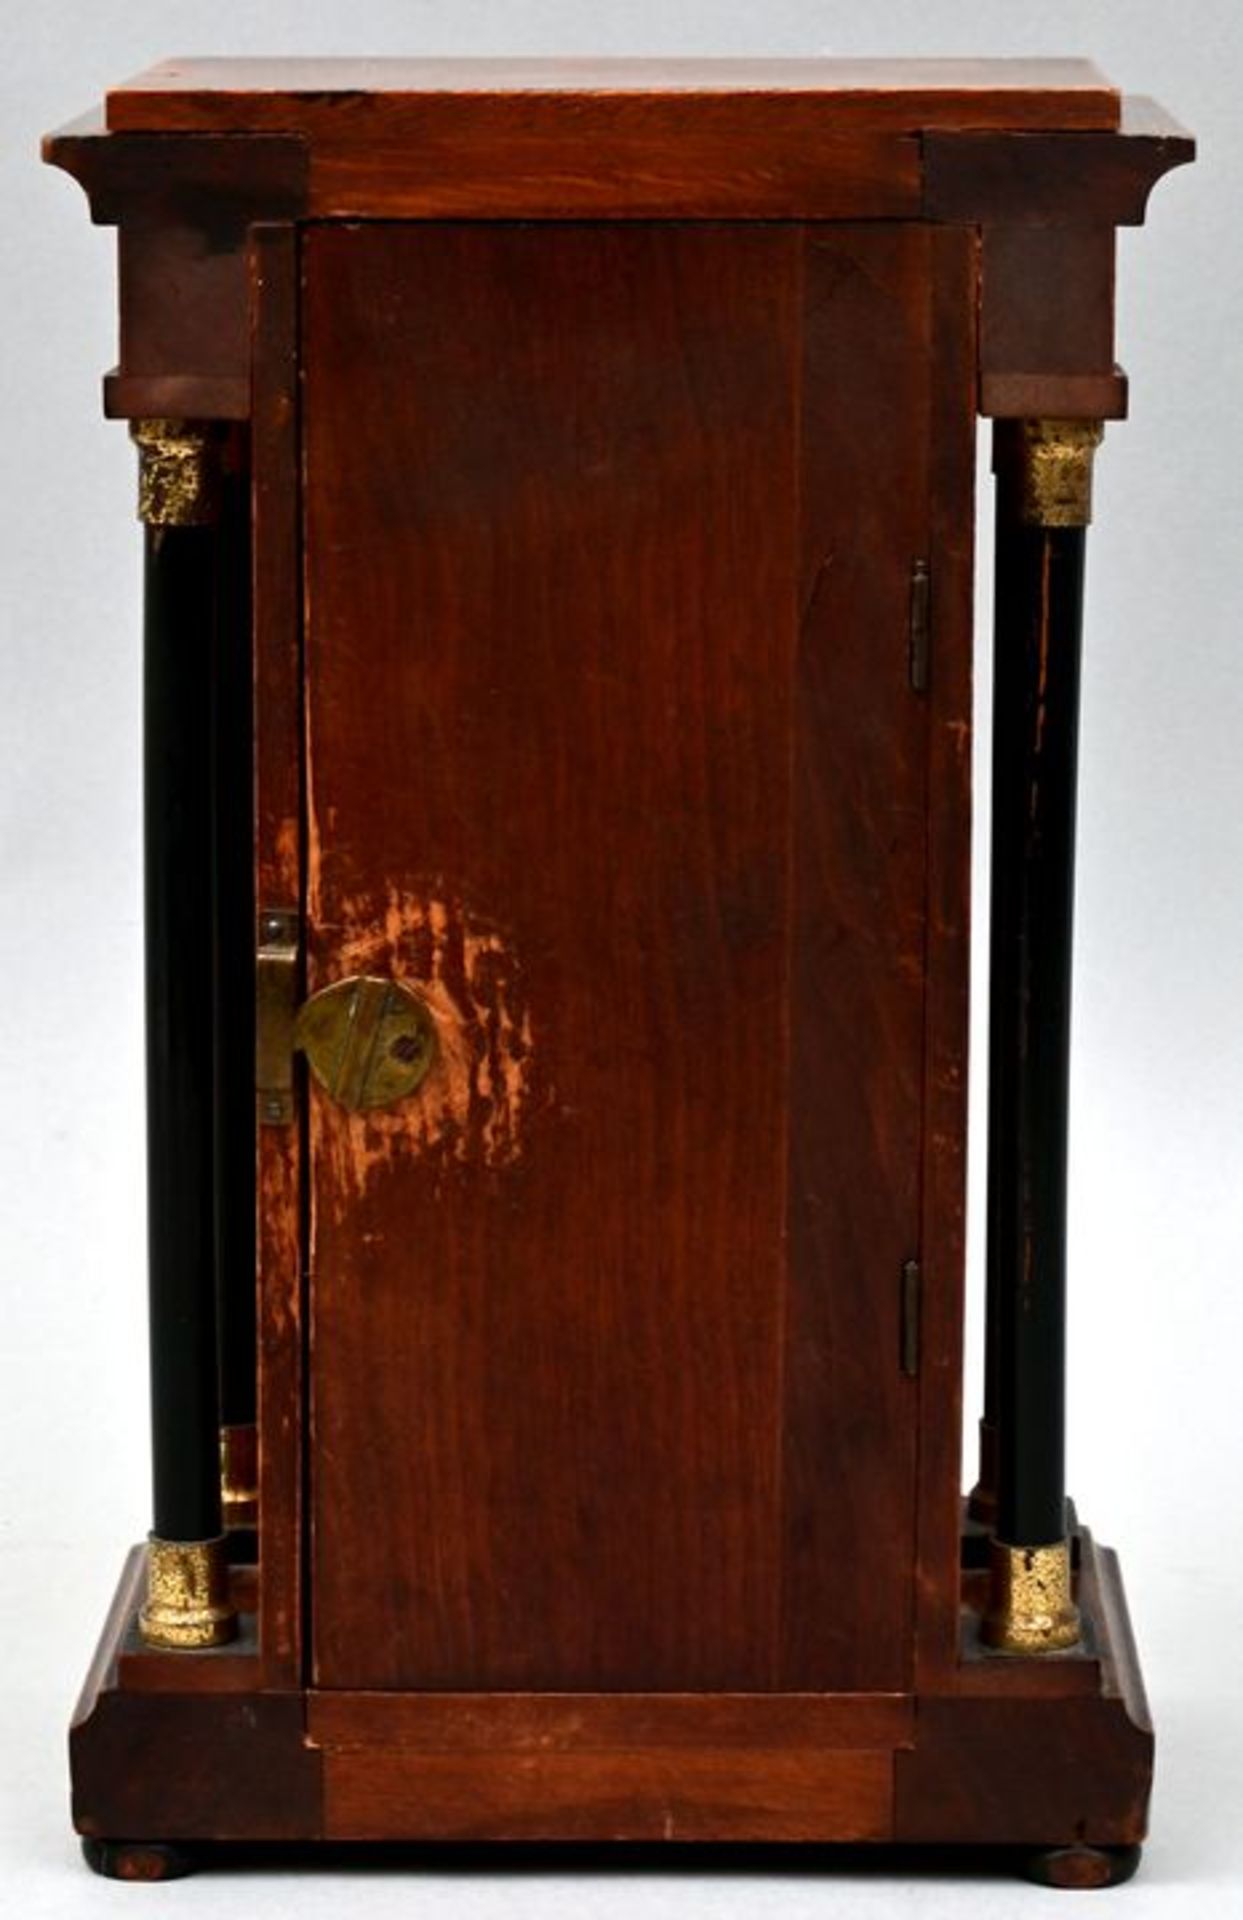 Kl. Tischuhr / Small table clock - Bild 3 aus 5